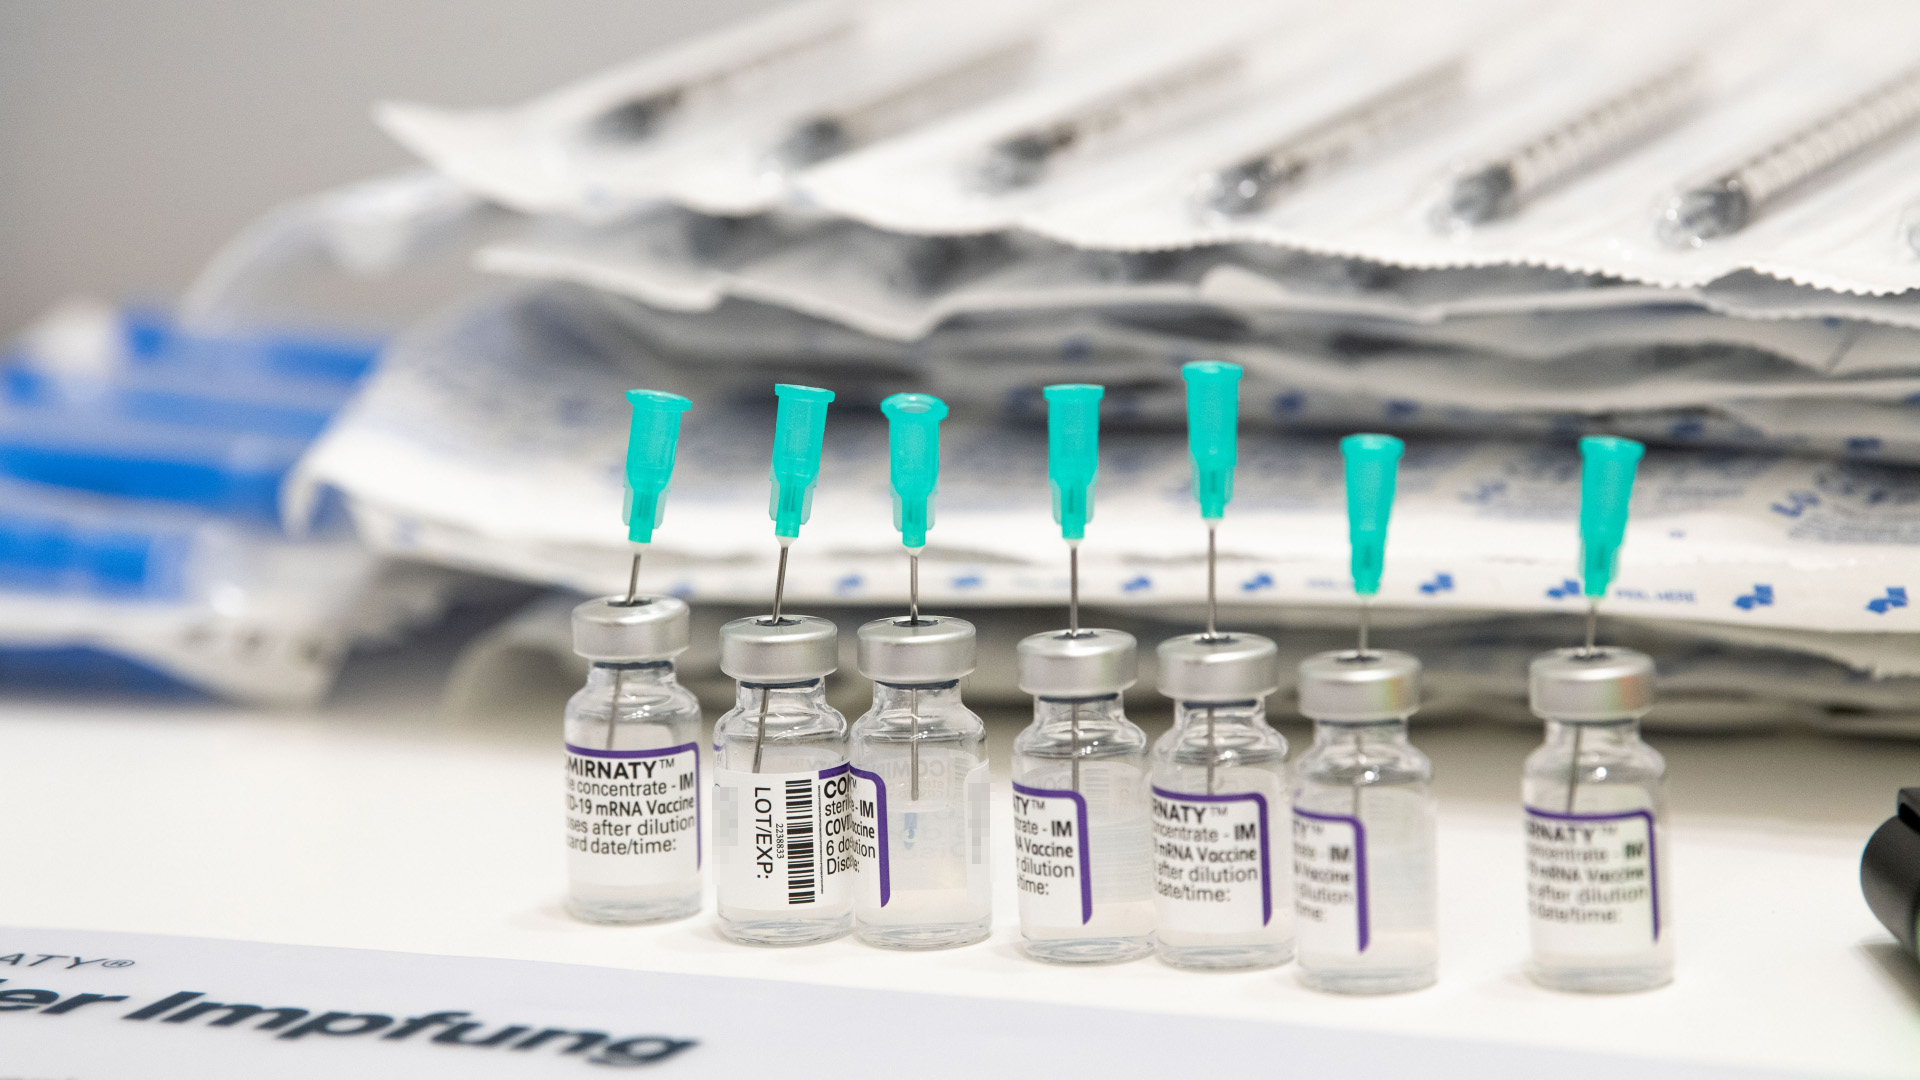 Impfampullen mit Biotech Impfstoff steht für die Vorbereitung zum Impfung bereit.